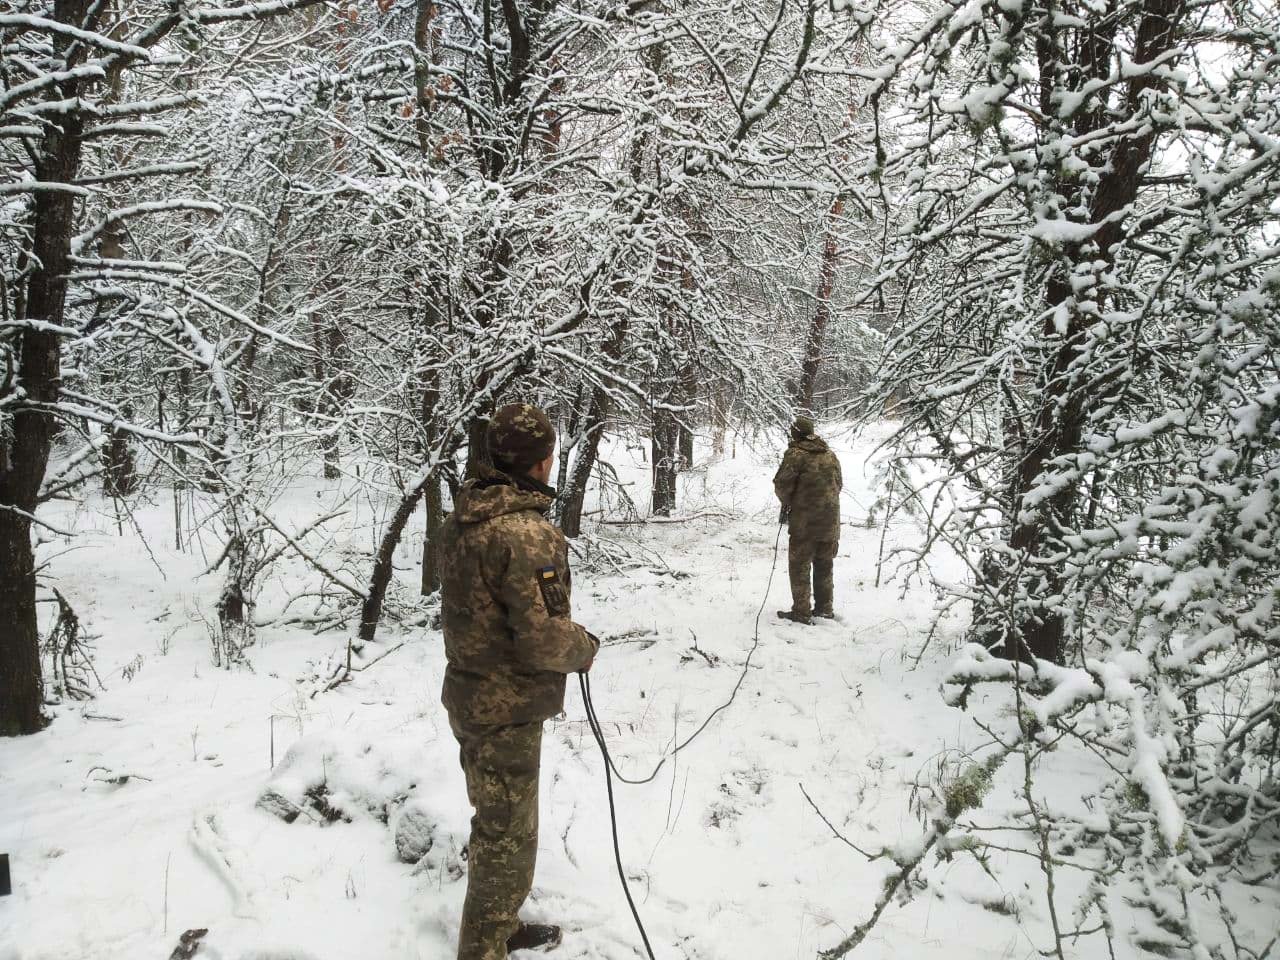 Гармати, танки та зв’язок: на Чернігівщині пройшли потужні військові навчання